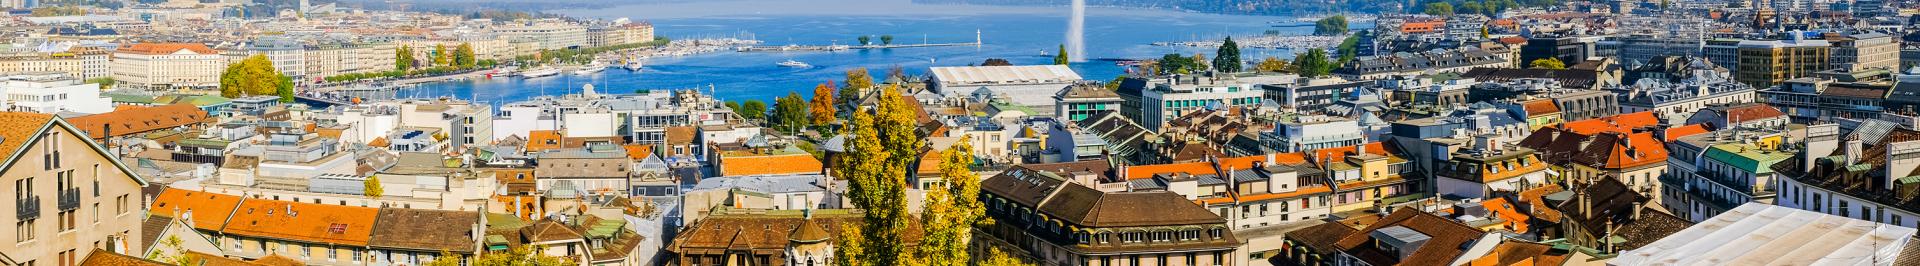 Suisse - Genève